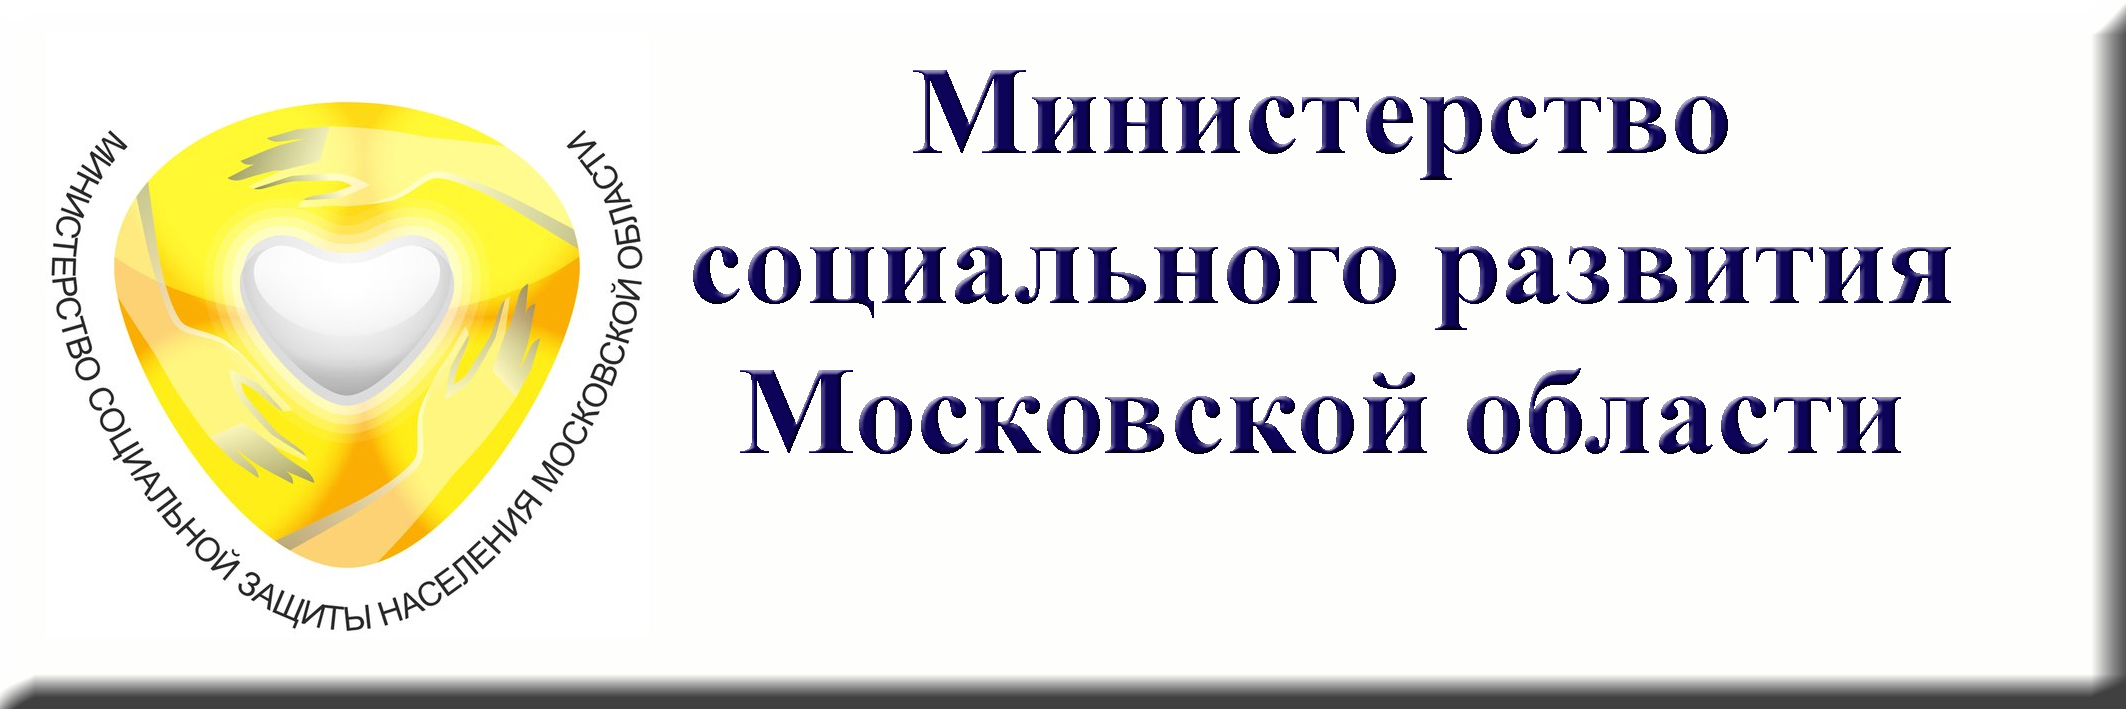 Социальная защита московской области сайт